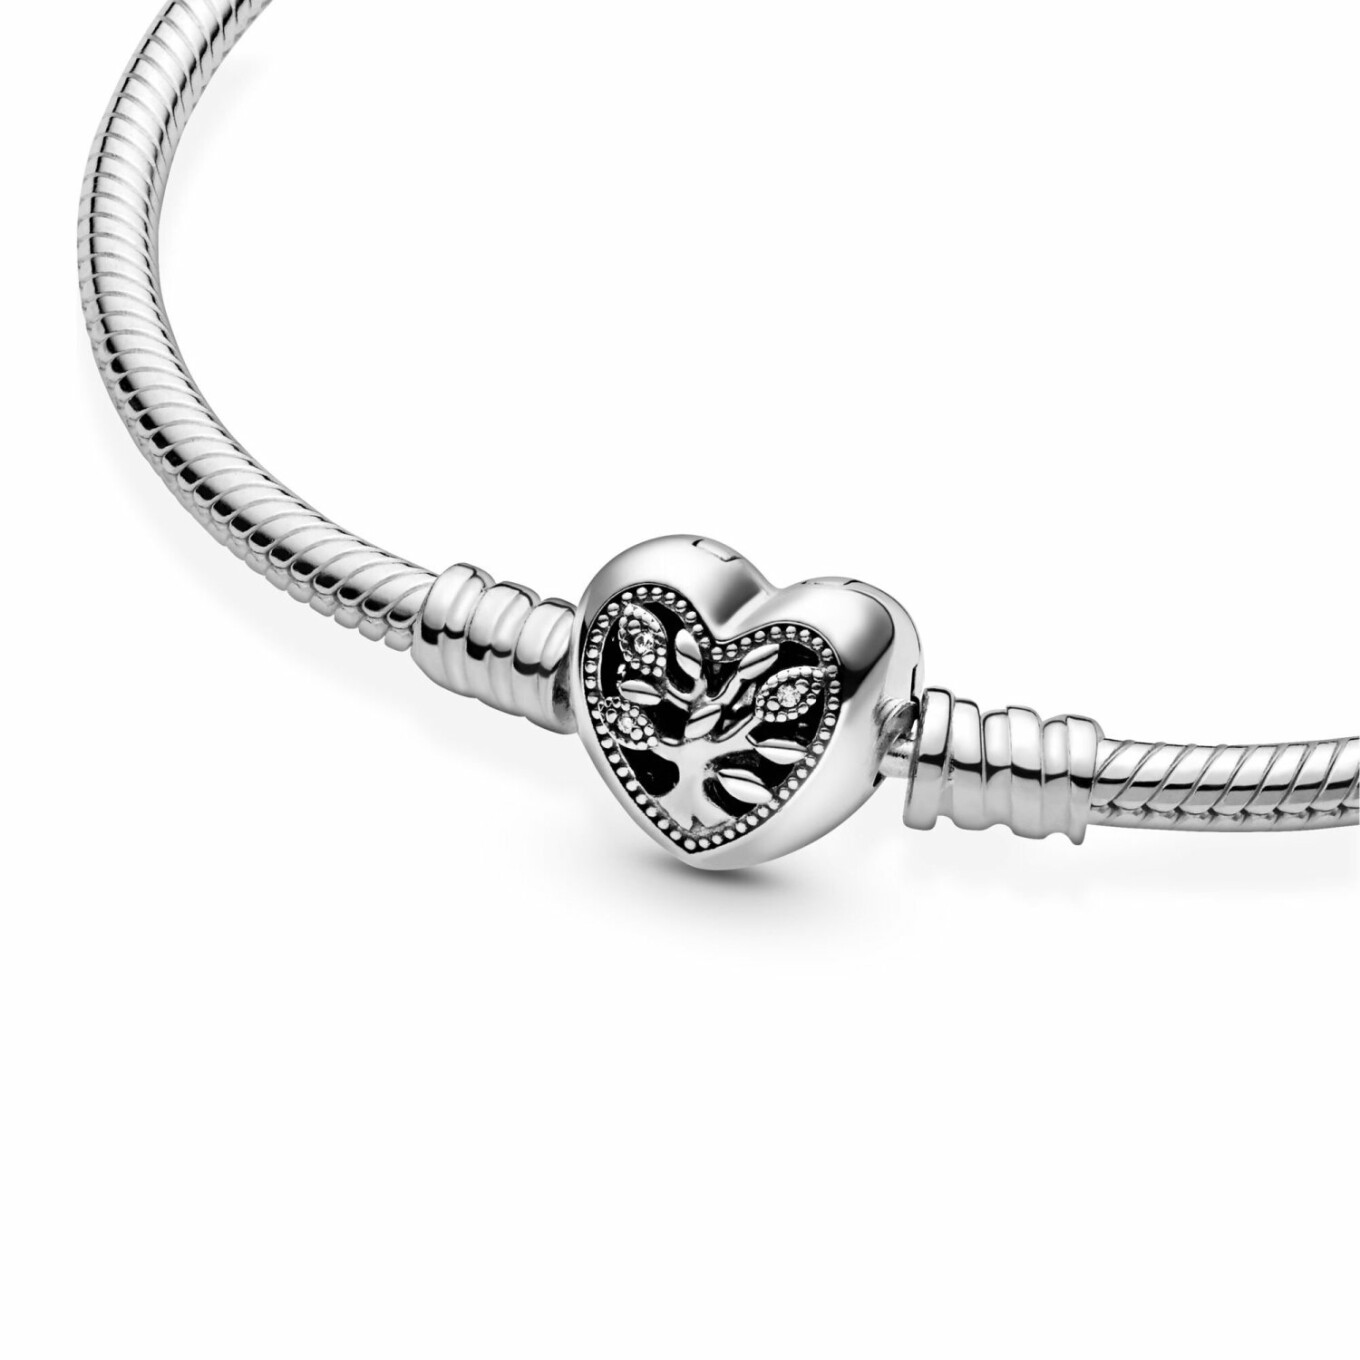 Bracelet Pandora People maille serpent fermoir cœur arbre de vie moments en argent et oxyde de zirconium, 19 cm